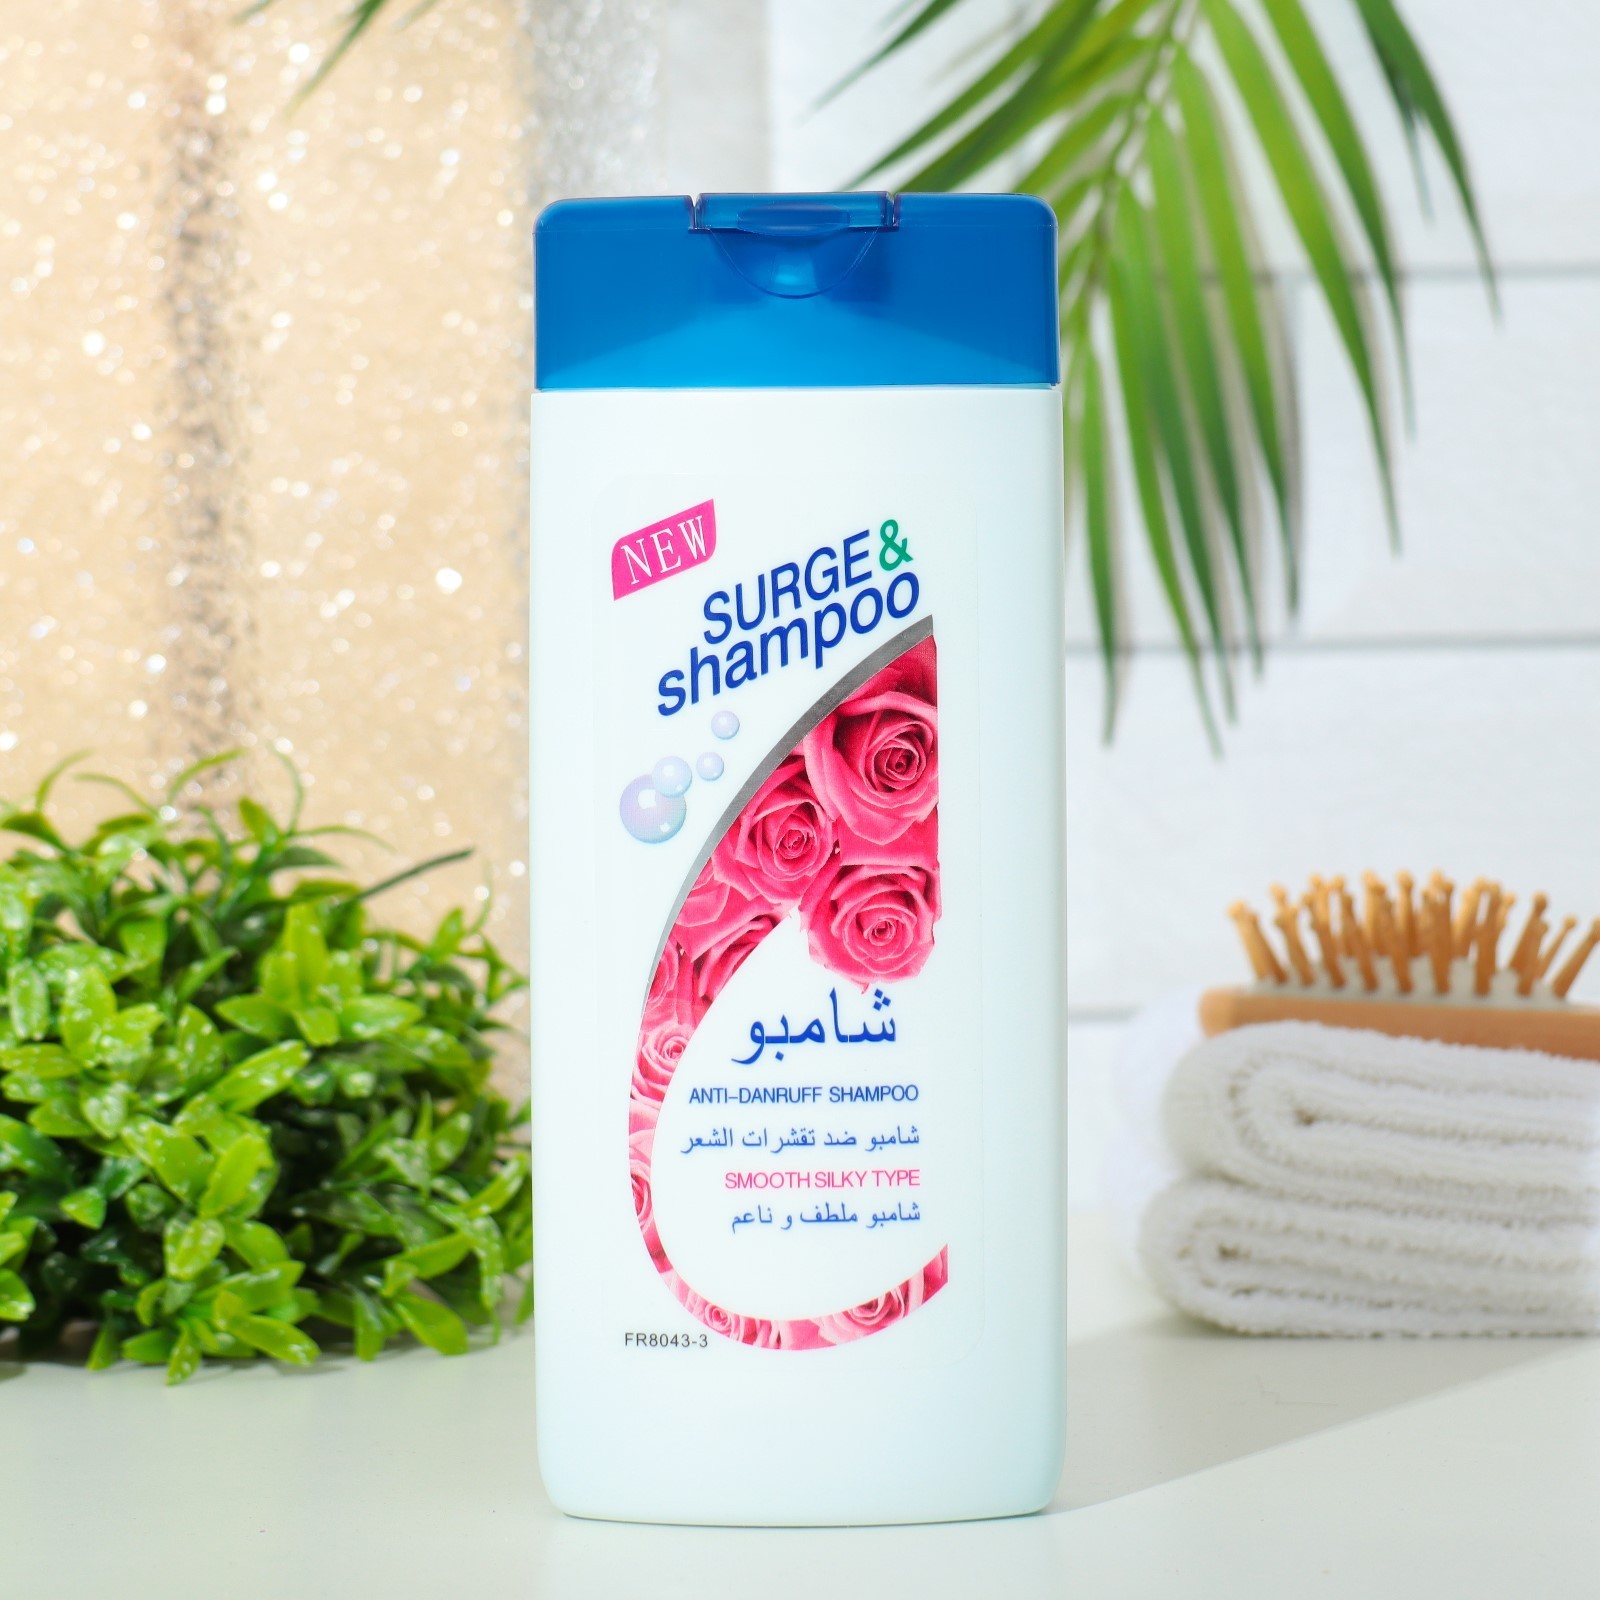 Шампунь Surge&shampoo для волос с розой 400 мл la savonnerie de nyons мыло с майской розой сакре кер 100